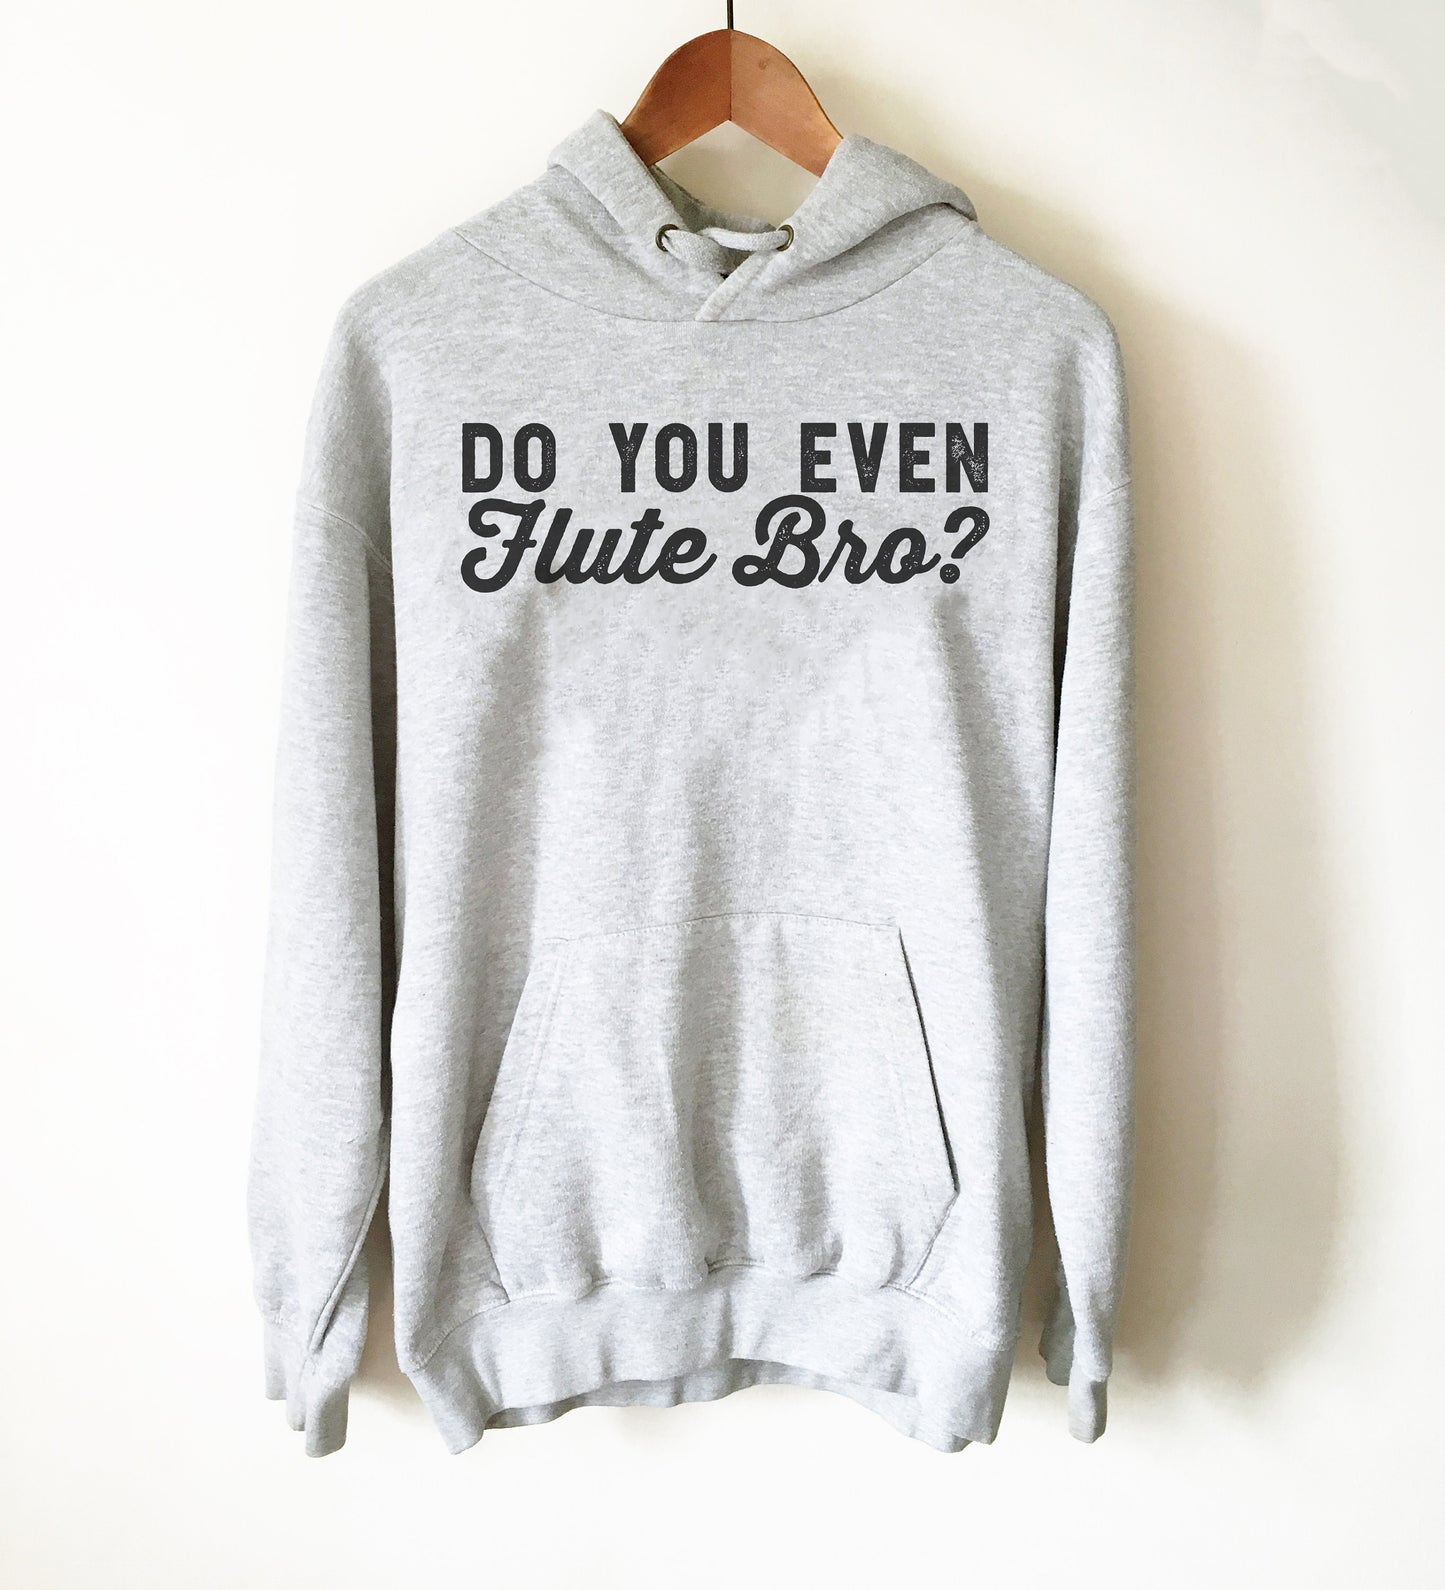 Do You Even Flute Bro? Hoodie - Flute Shirt, Flute Gift, Musician Gift, Band T-Shirts, Music Shirt, Music Teacher Shirt